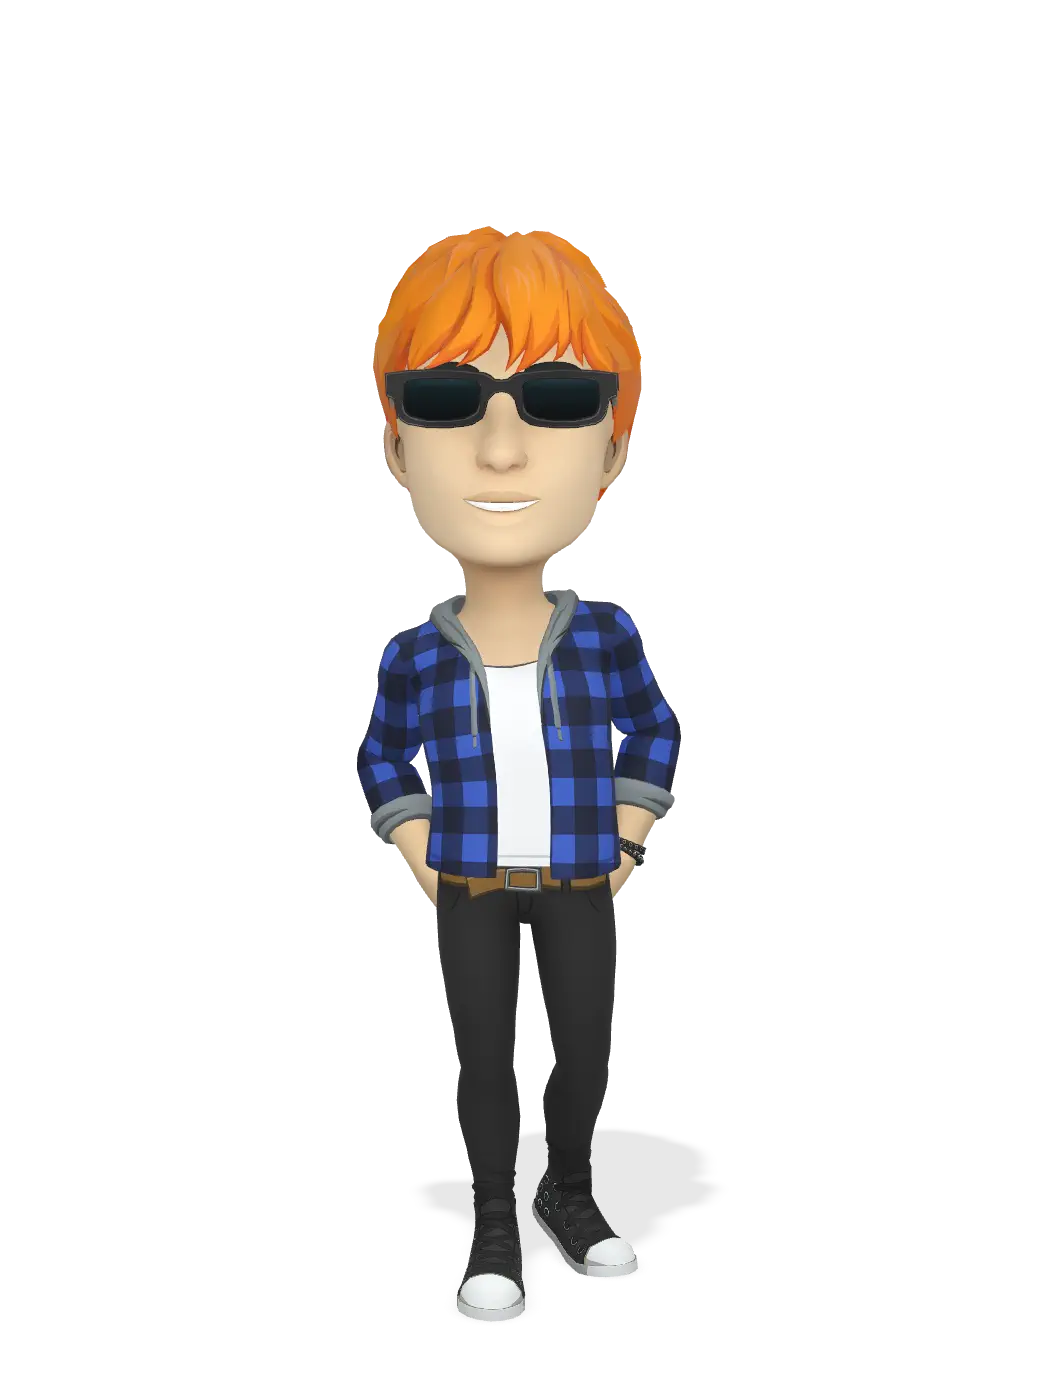 3D Bitmoji for rysie1024 avatar